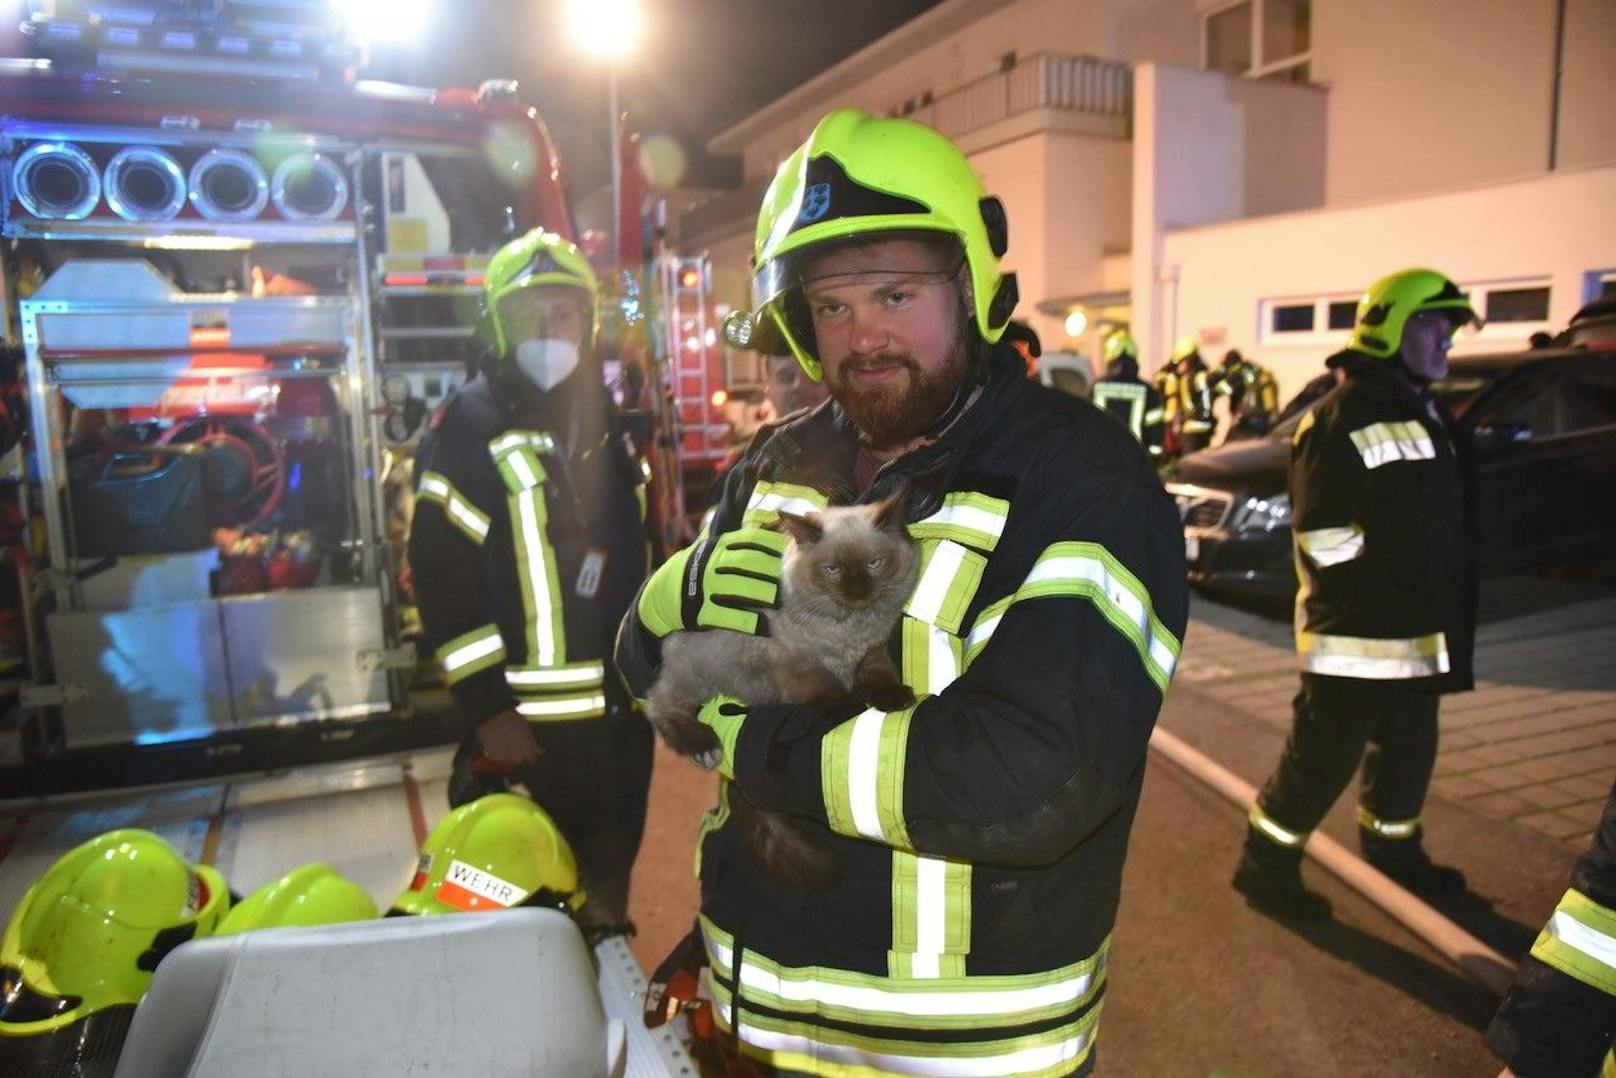 30 Leute bei Wohnhausbrand evakuiert - 2 Tiere gerettet